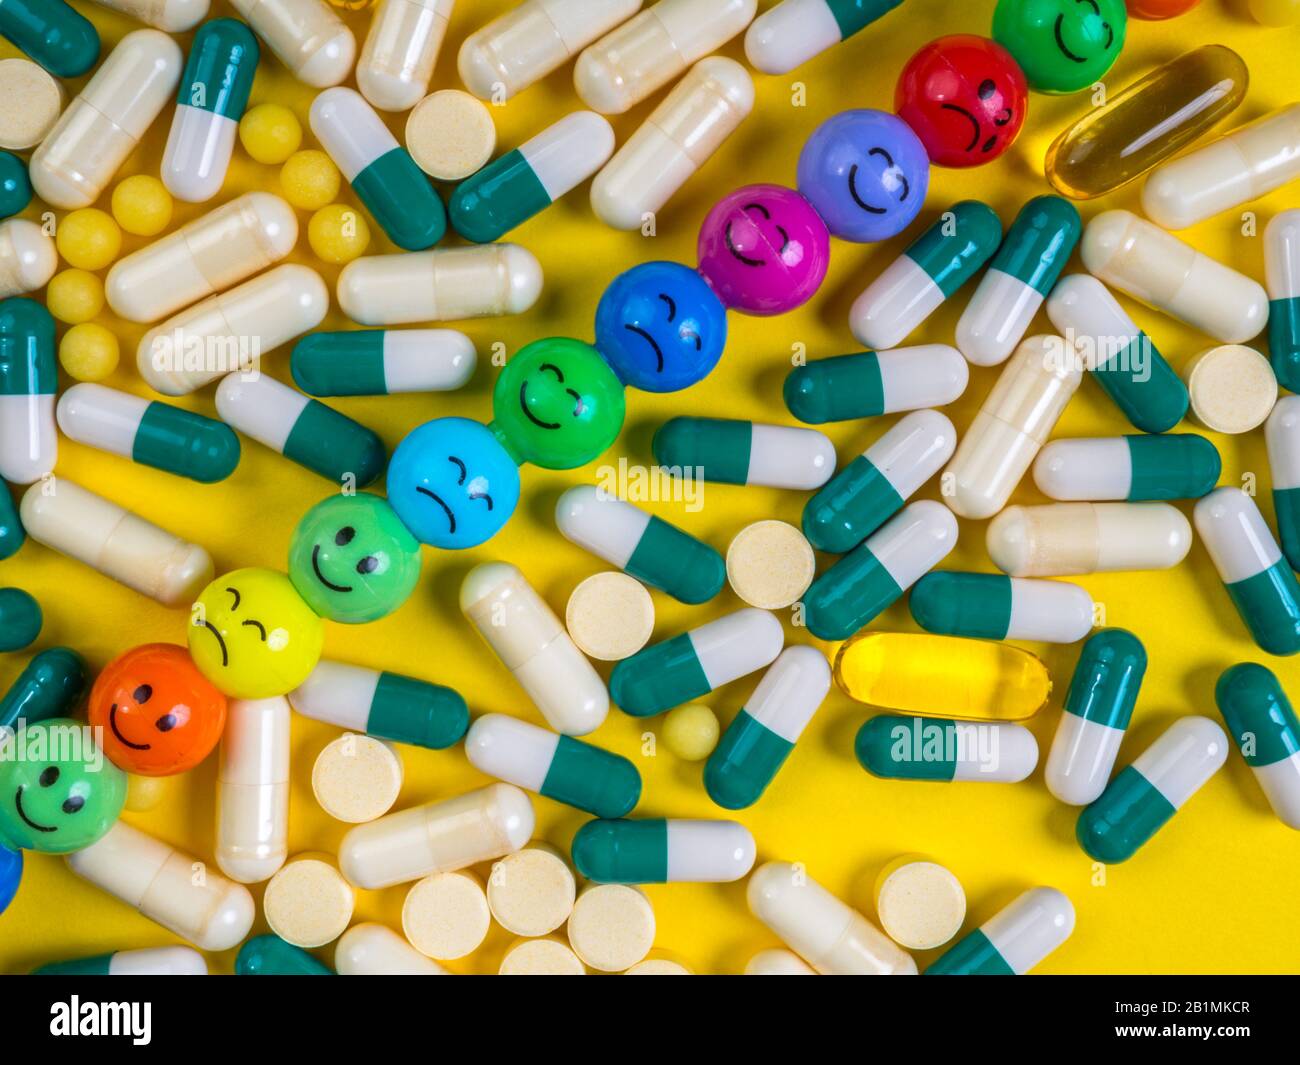 Pilules, comprimés et capsules multicolores avec des visages colorés et drôles d'émotions sur fond jaune. Concept de médecine. Guérison. Pilules antidépresseurs. Gros plan Banque D'Images